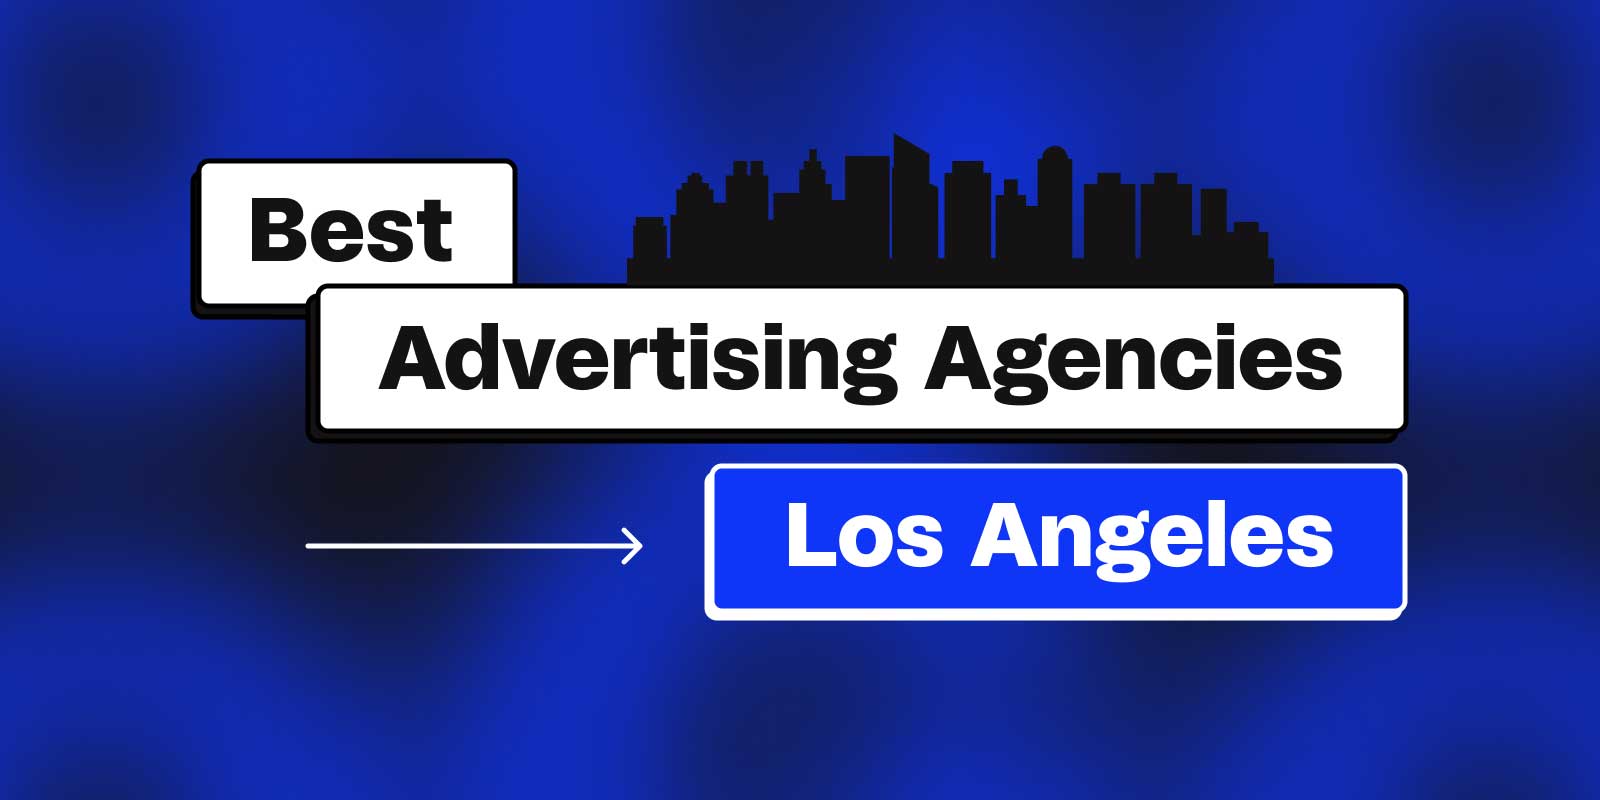 Best Advertising Agencies Los Angeles